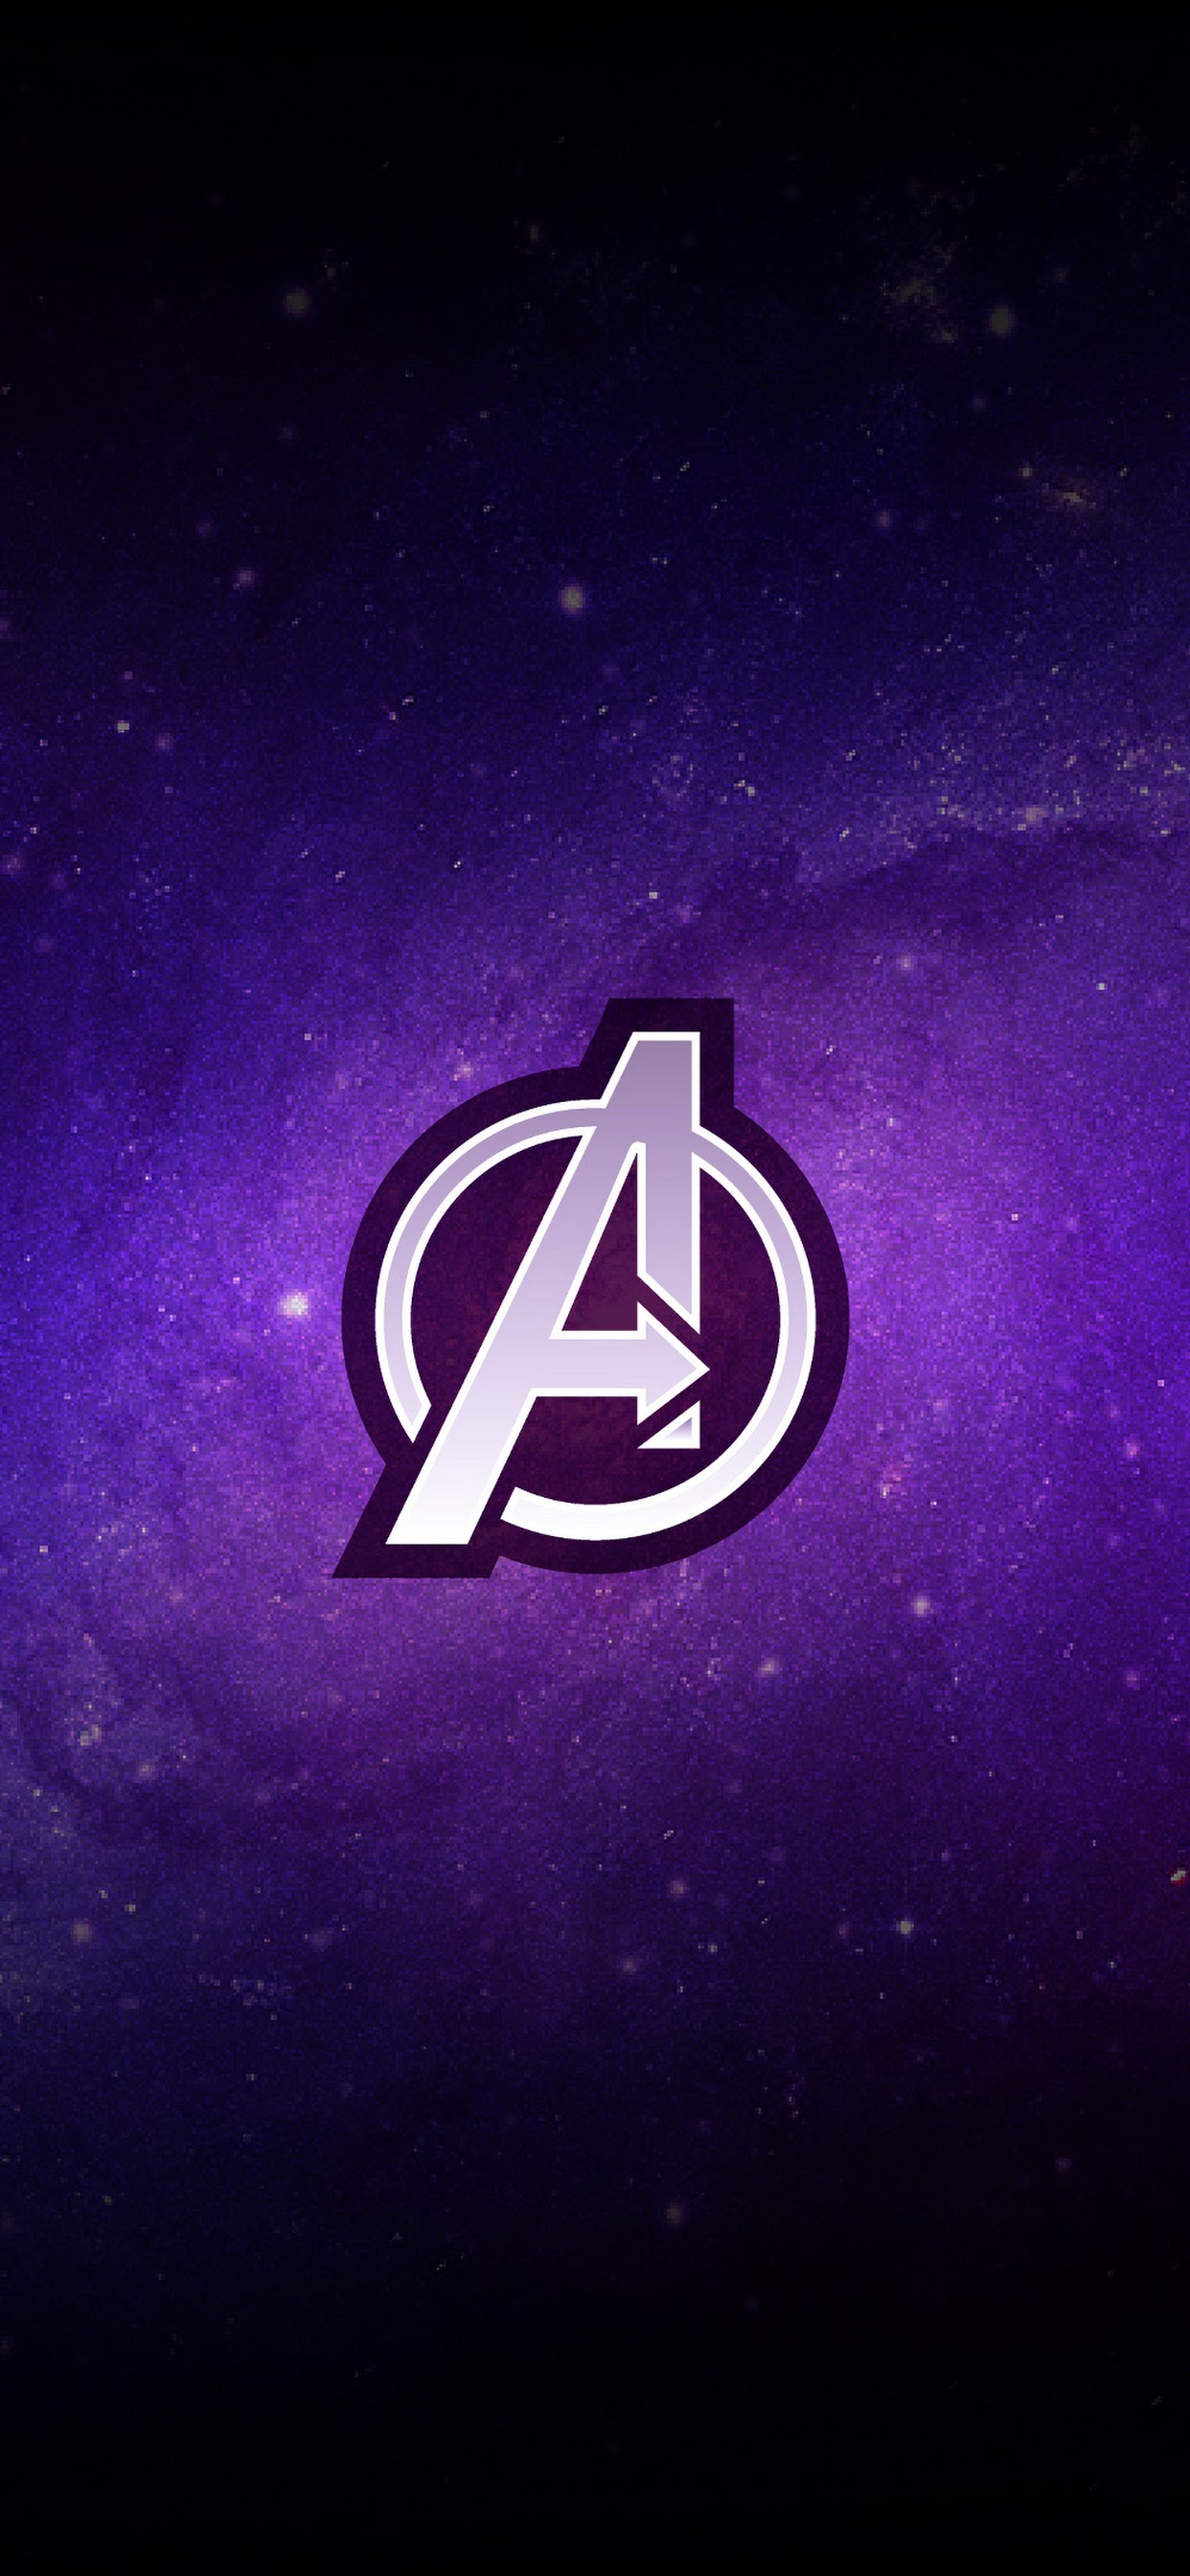 Avengers Endgame Logo Wallpaper 8k Ultra HD ID:3034